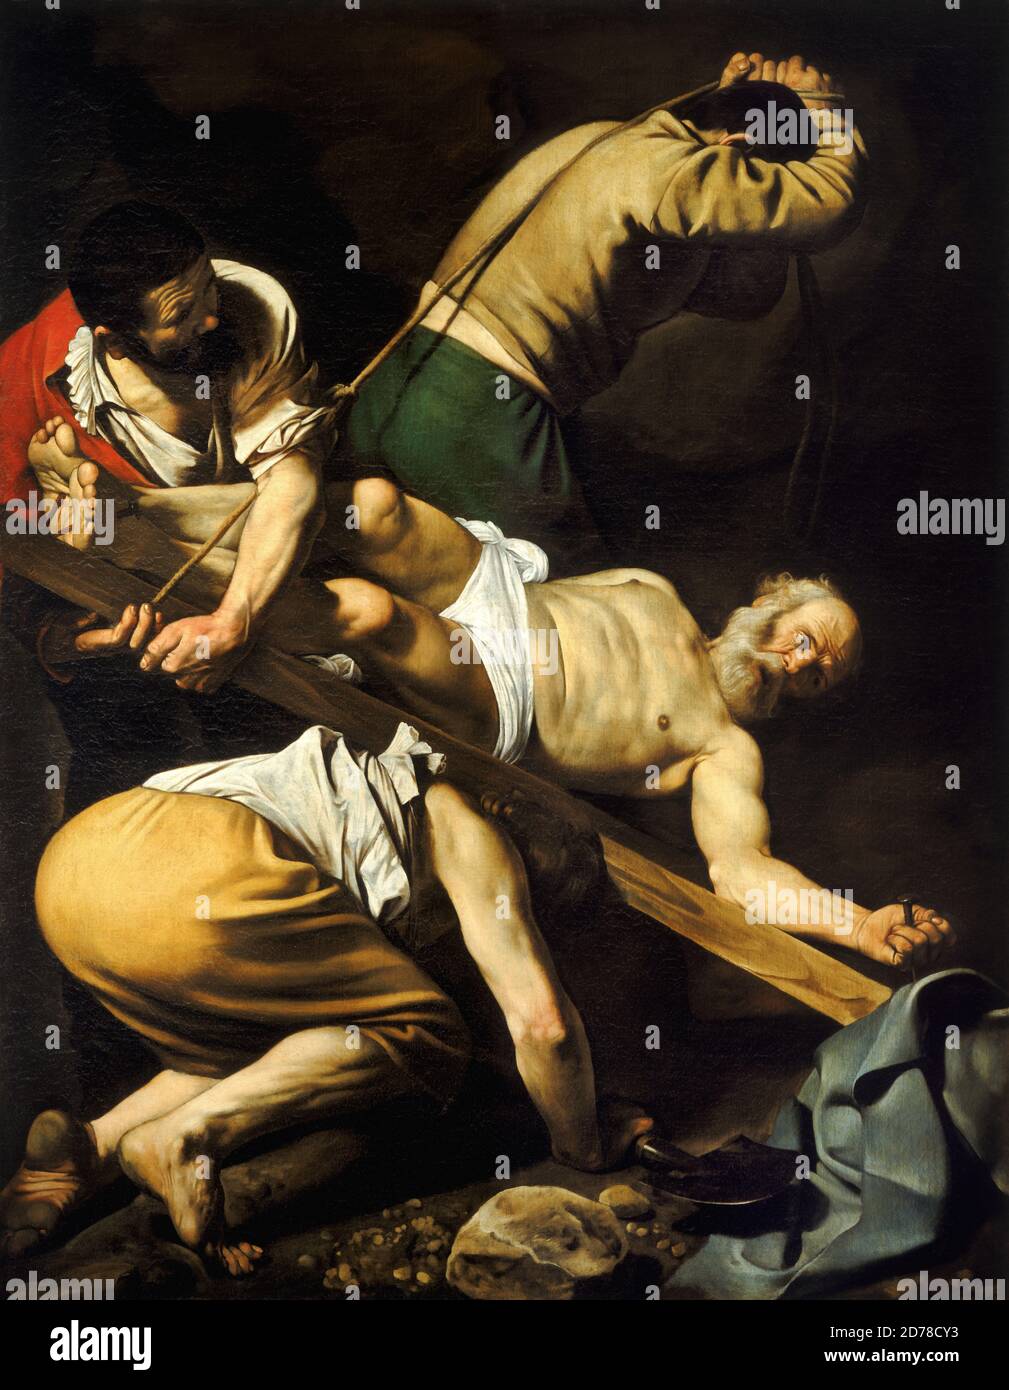 Title: The Crucifixion of St. Peter Creator: Michelangelo Caravaggio  Date: 1600-01 Medium: oil on panel Dimensions: 67 x 53 cms Location: Santa Maria del Popolo, Rome Stock Photo